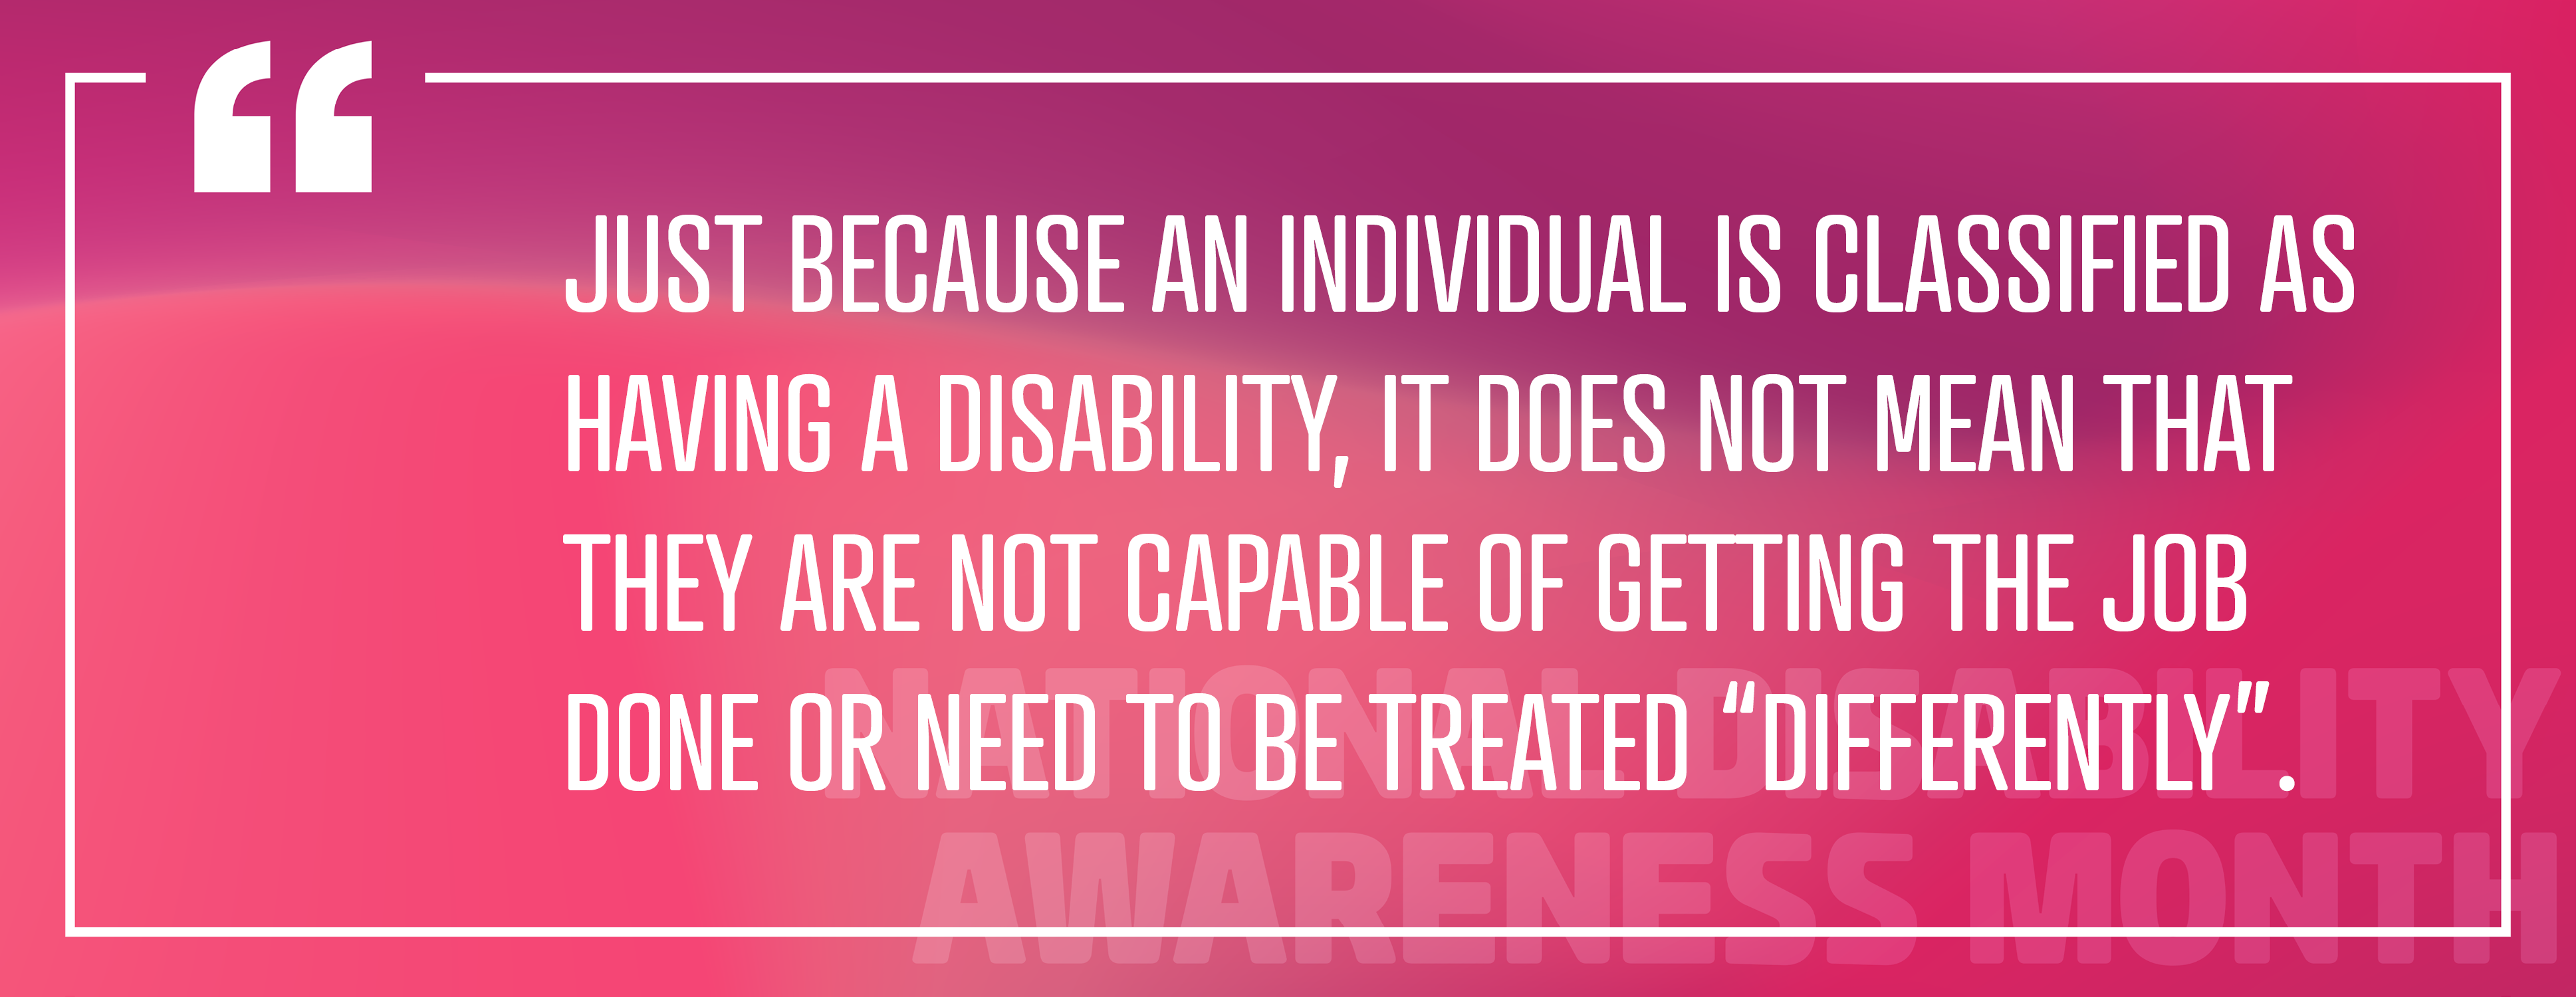 Bild 4: "Bara för att en individ klassificeras som funktionshindrad betyder det inte att de inte är kapabla att få jobbet gjort eller behöver behandlas "annorlunda"."